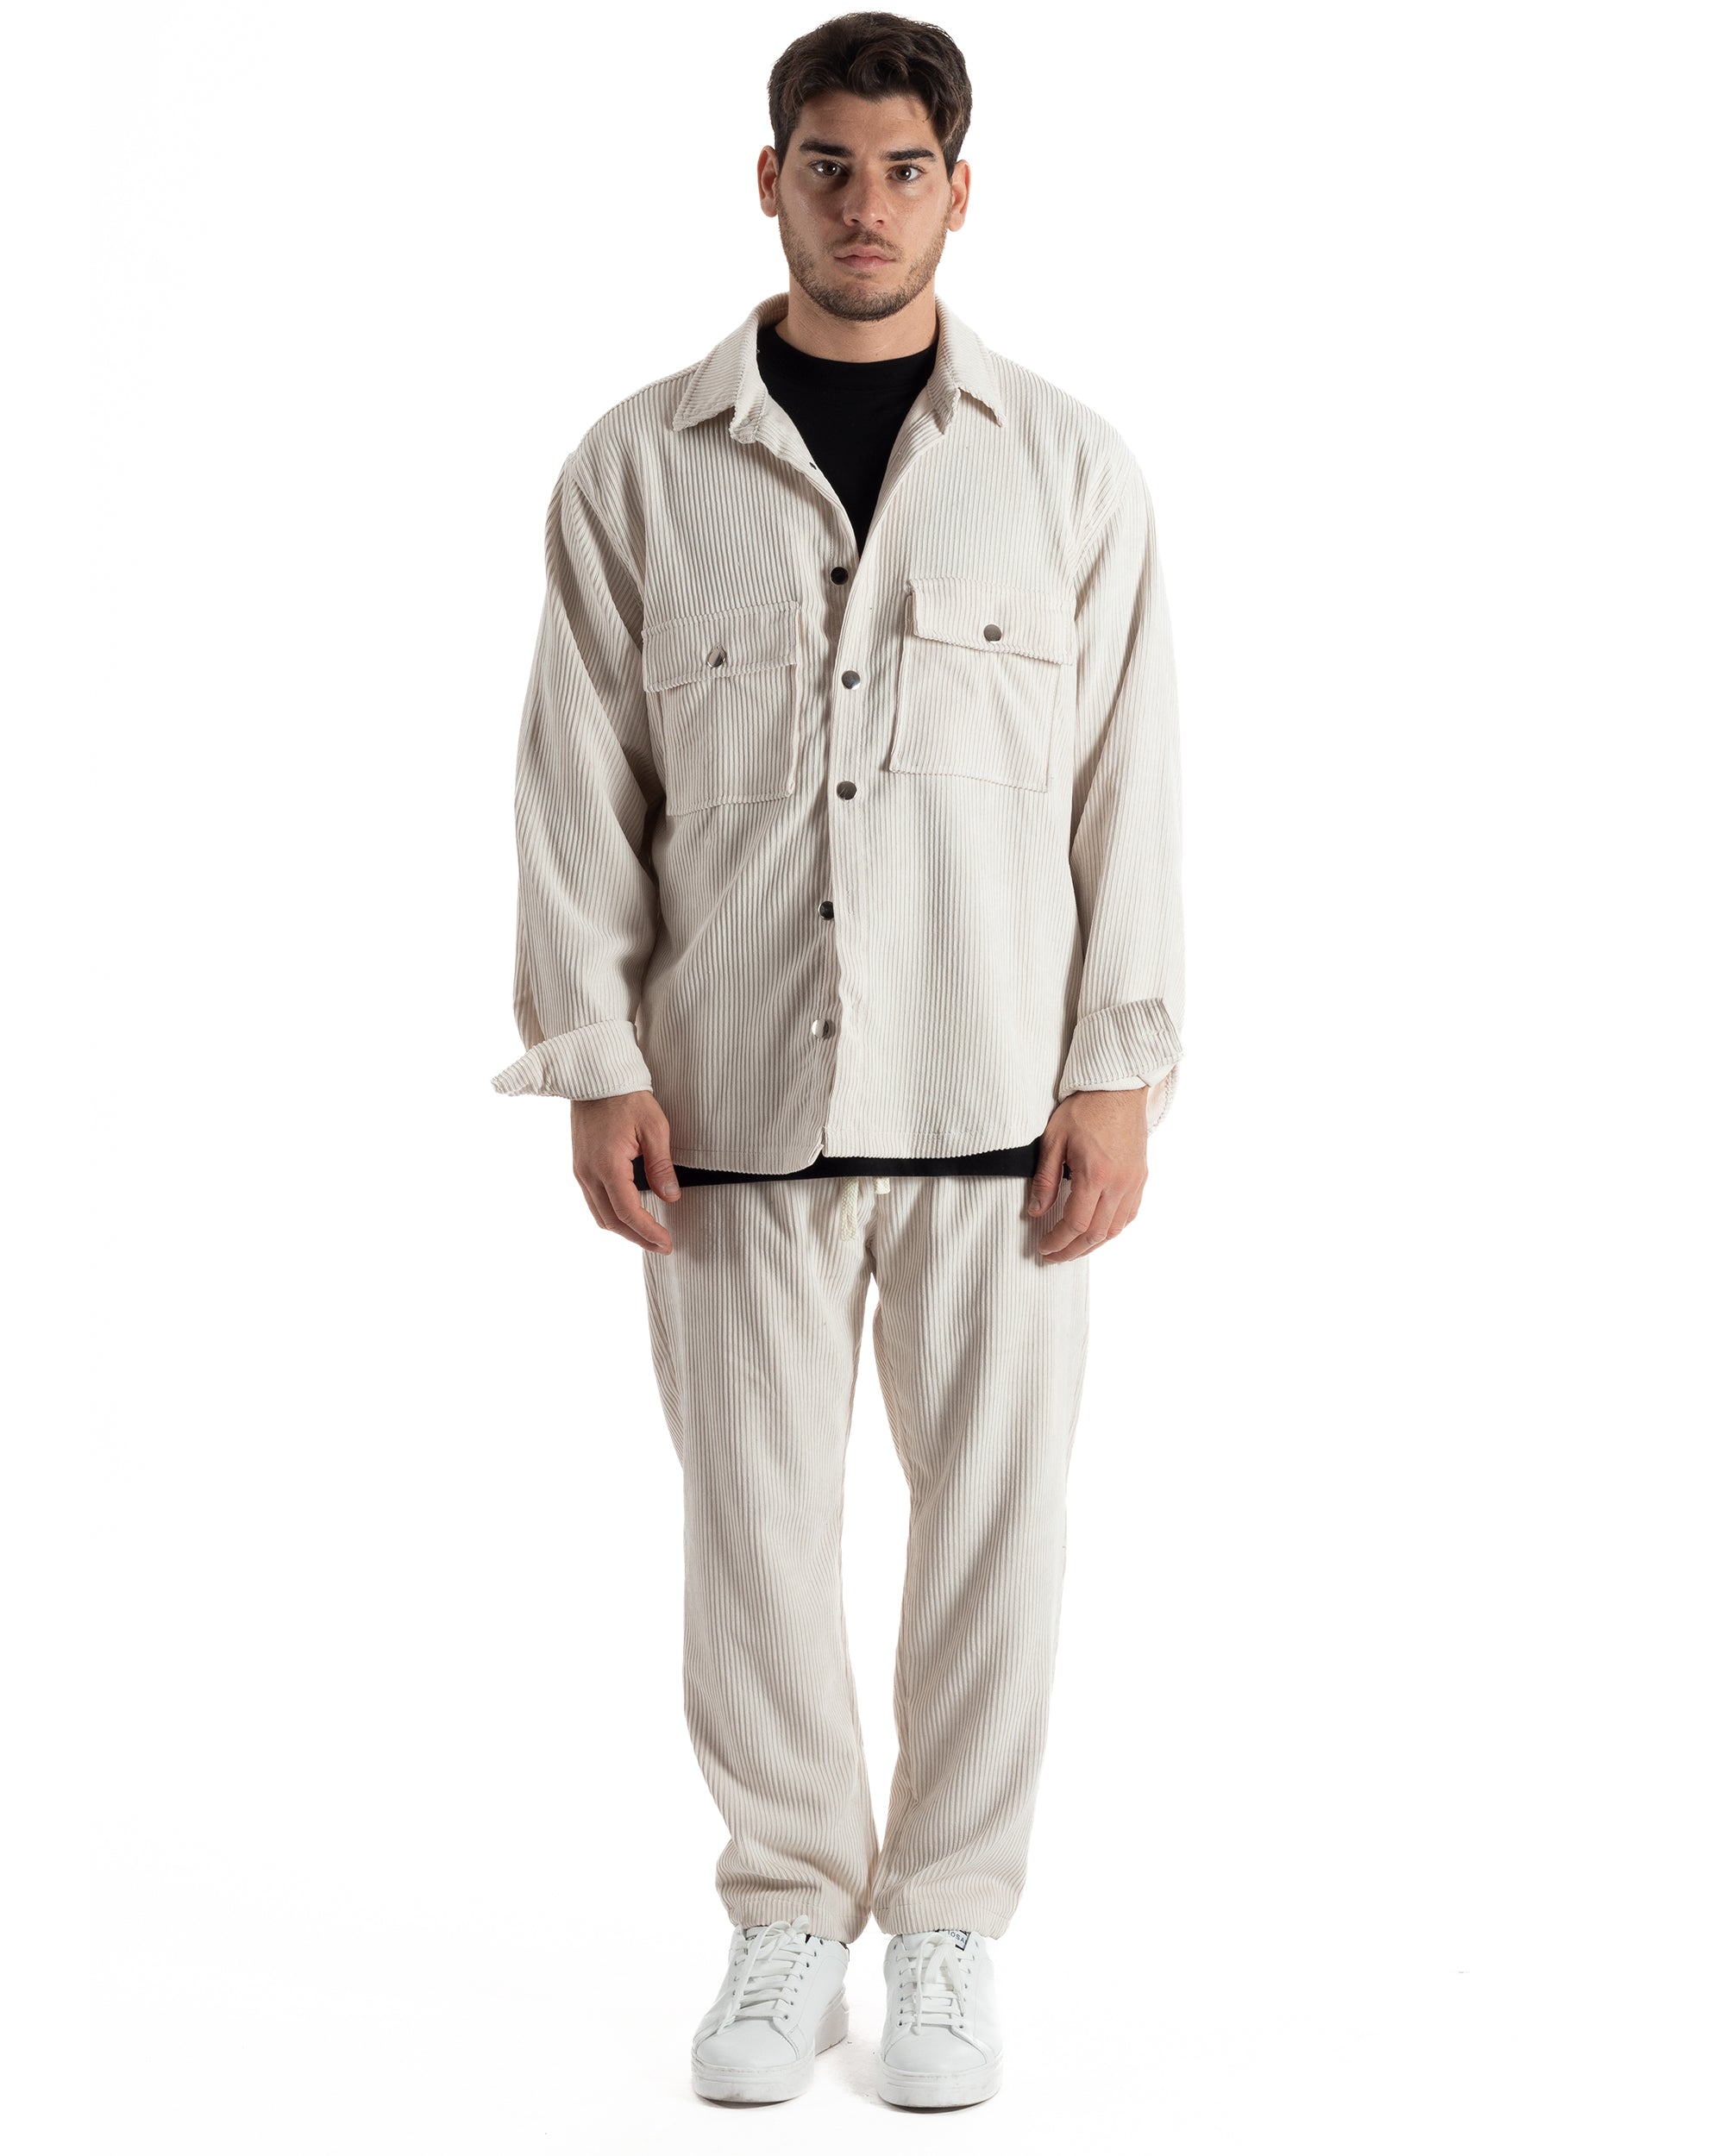 Completo Set Coordinato Uomo Velluto Costine Camicia Con Colletto Pantalaccio Outfit Panna GIOSAL-OU2435A